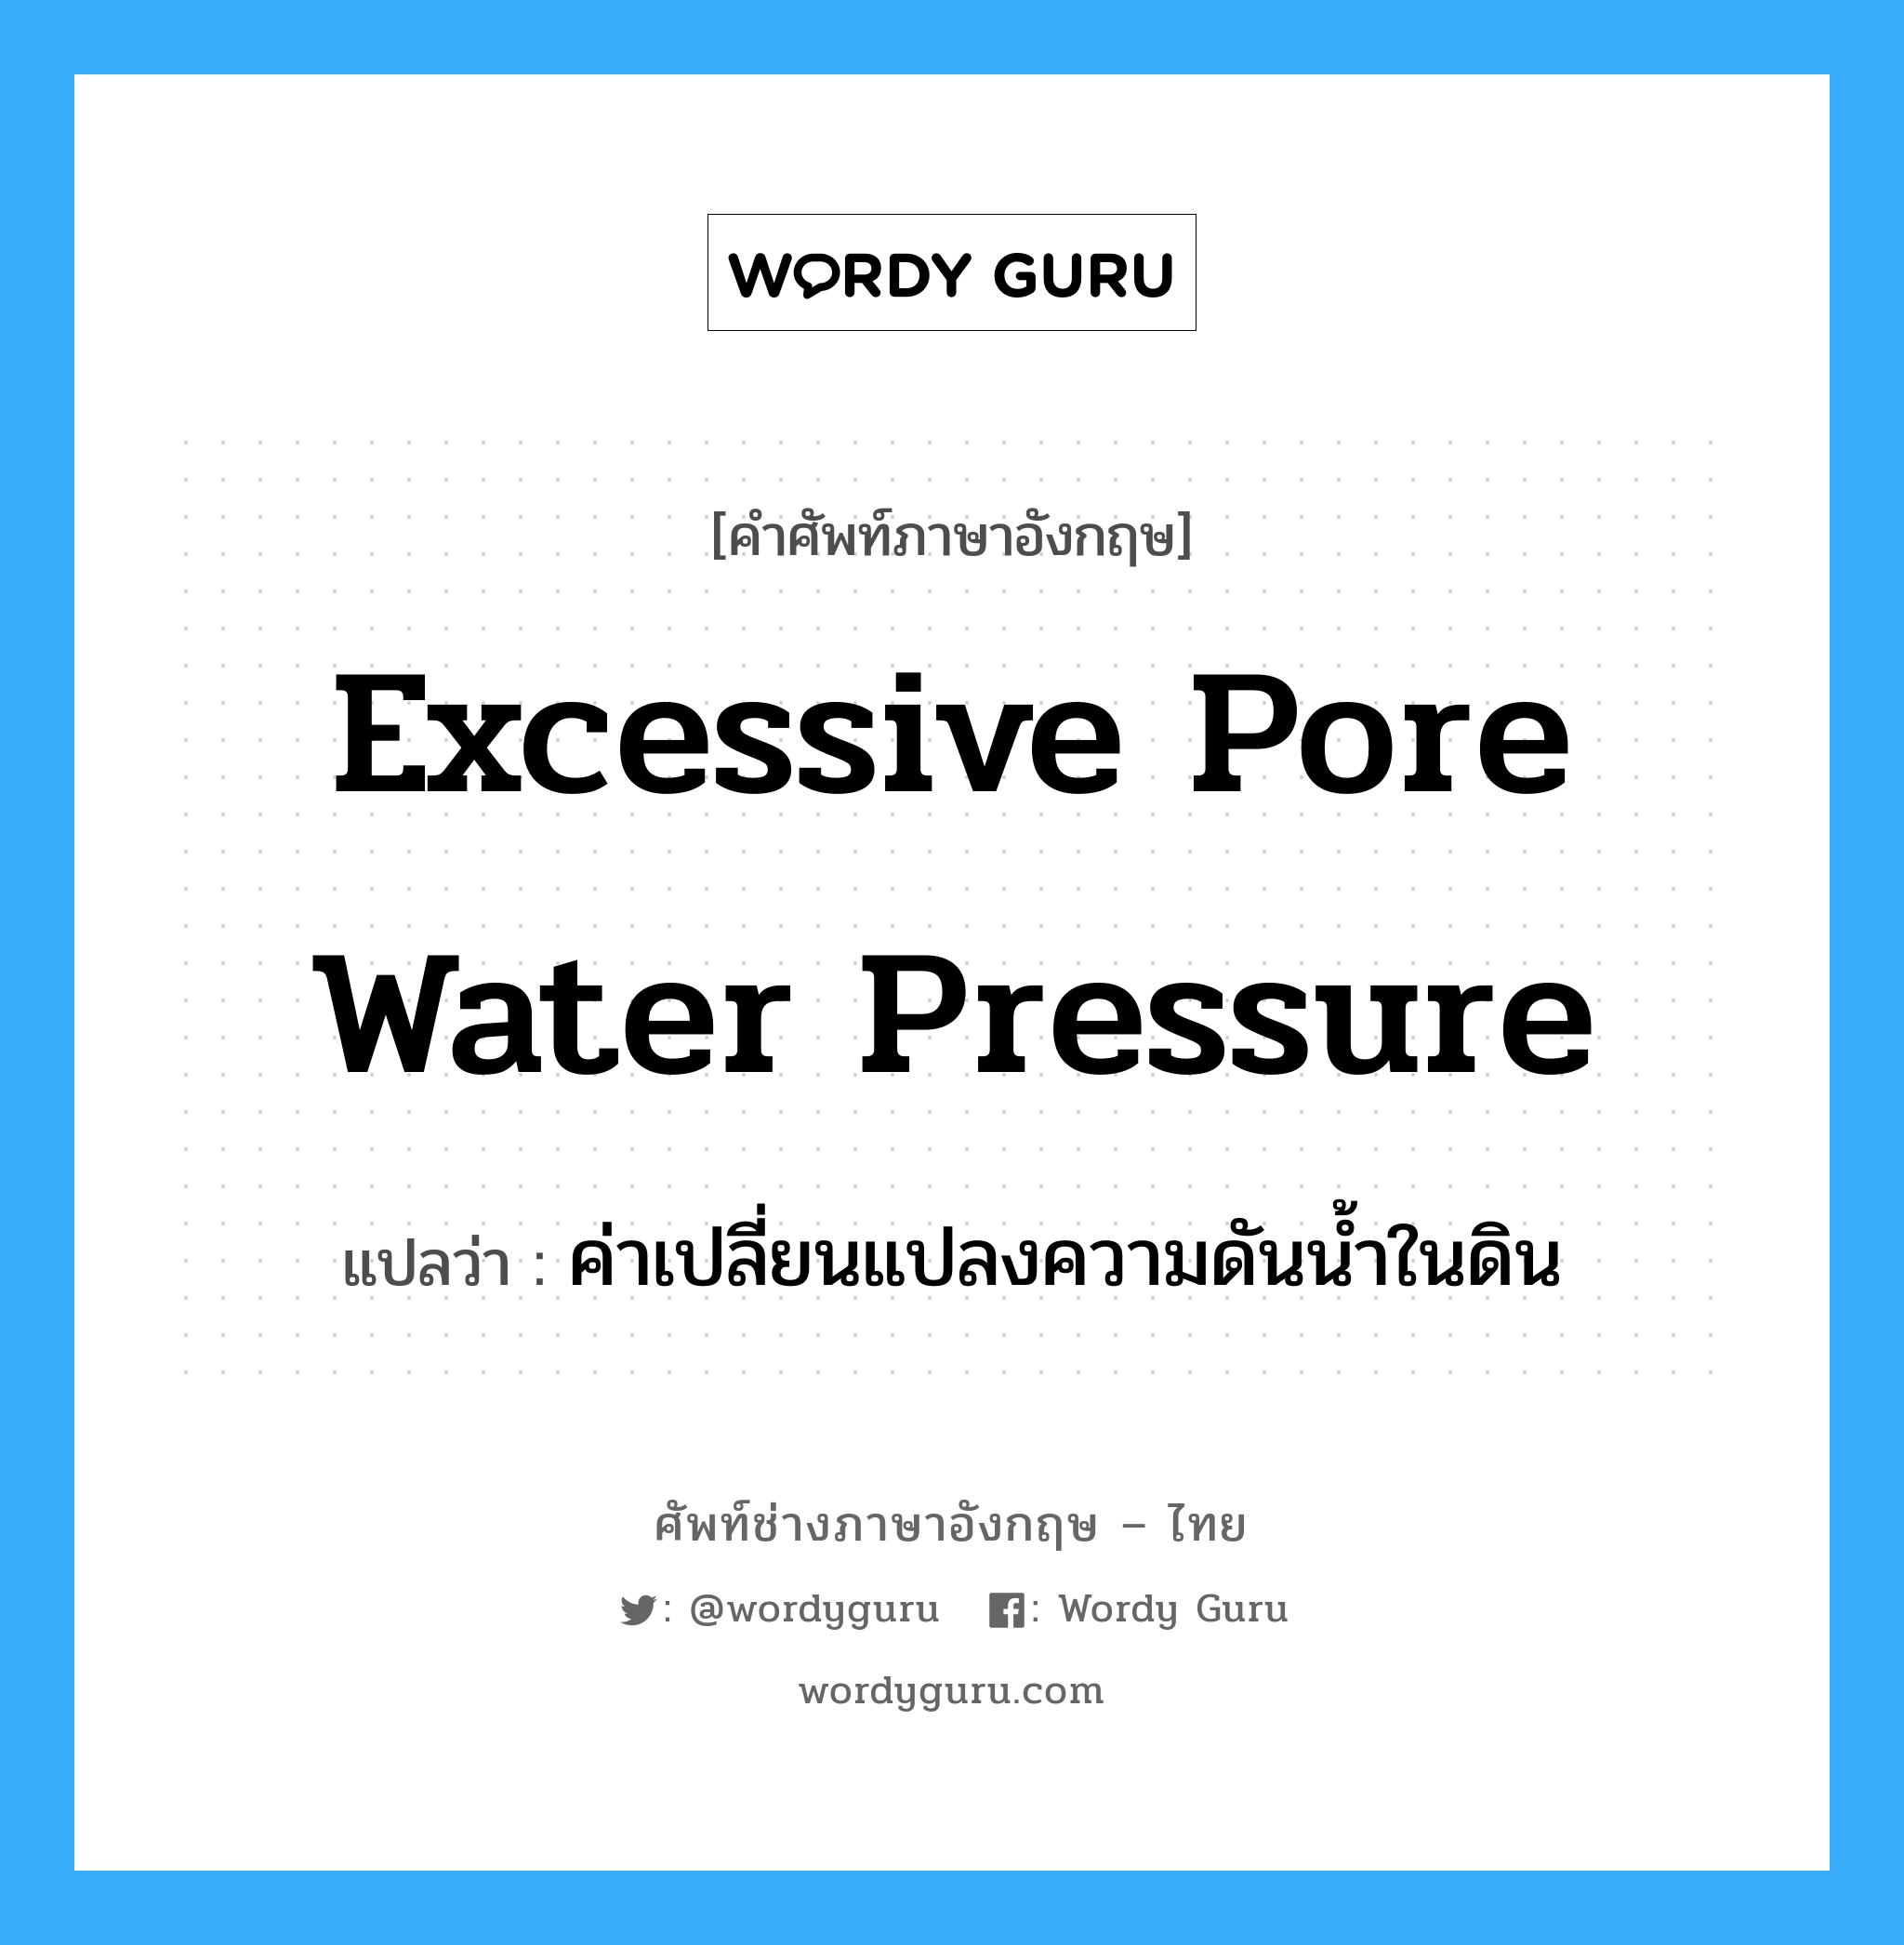 ค่าเปลี่ยนแปลงความดันน้ำในดิน ภาษาอังกฤษ?, คำศัพท์ช่างภาษาอังกฤษ - ไทย ค่าเปลี่ยนแปลงความดันน้ำในดิน คำศัพท์ภาษาอังกฤษ ค่าเปลี่ยนแปลงความดันน้ำในดิน แปลว่า excessive pore water pressure